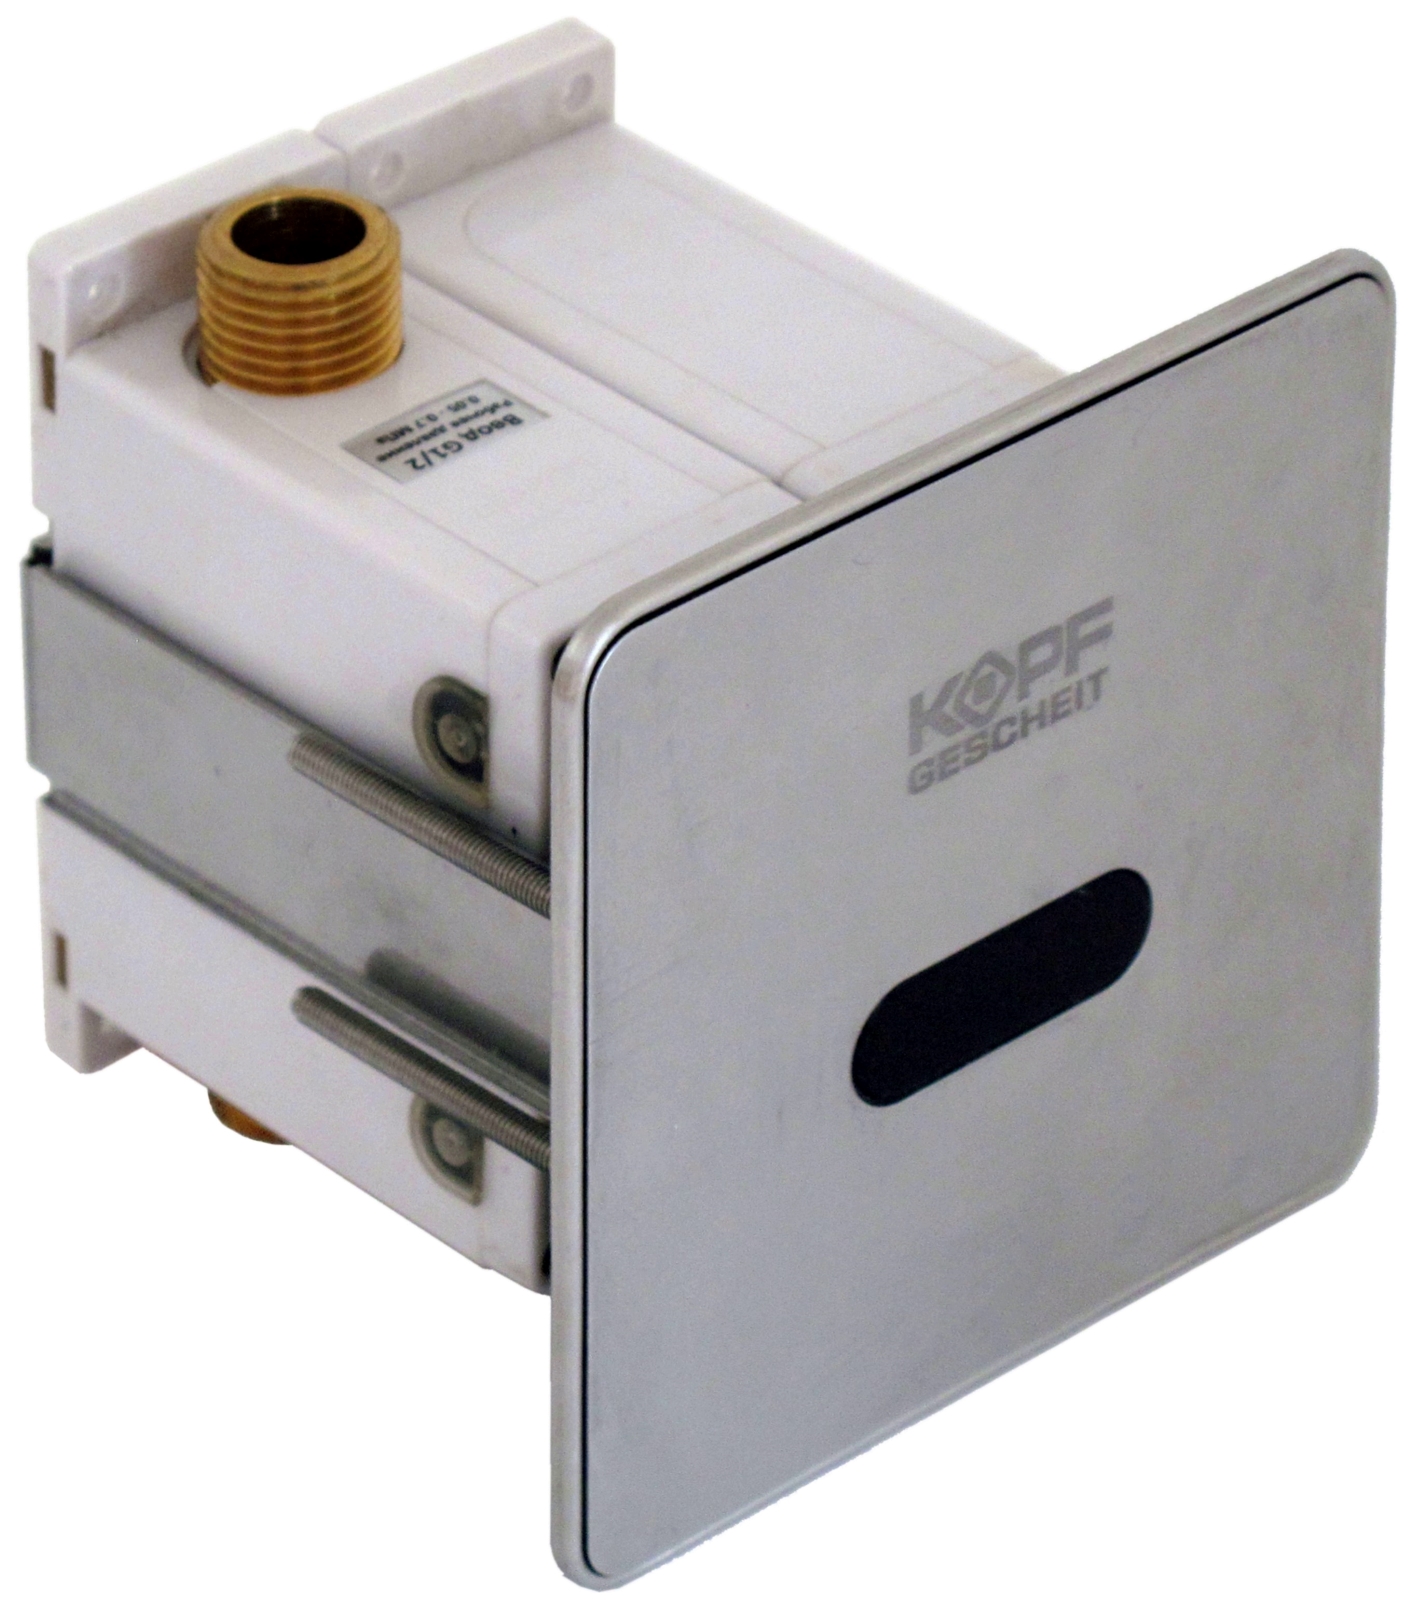 Automatic sensor faucet KG5444DC